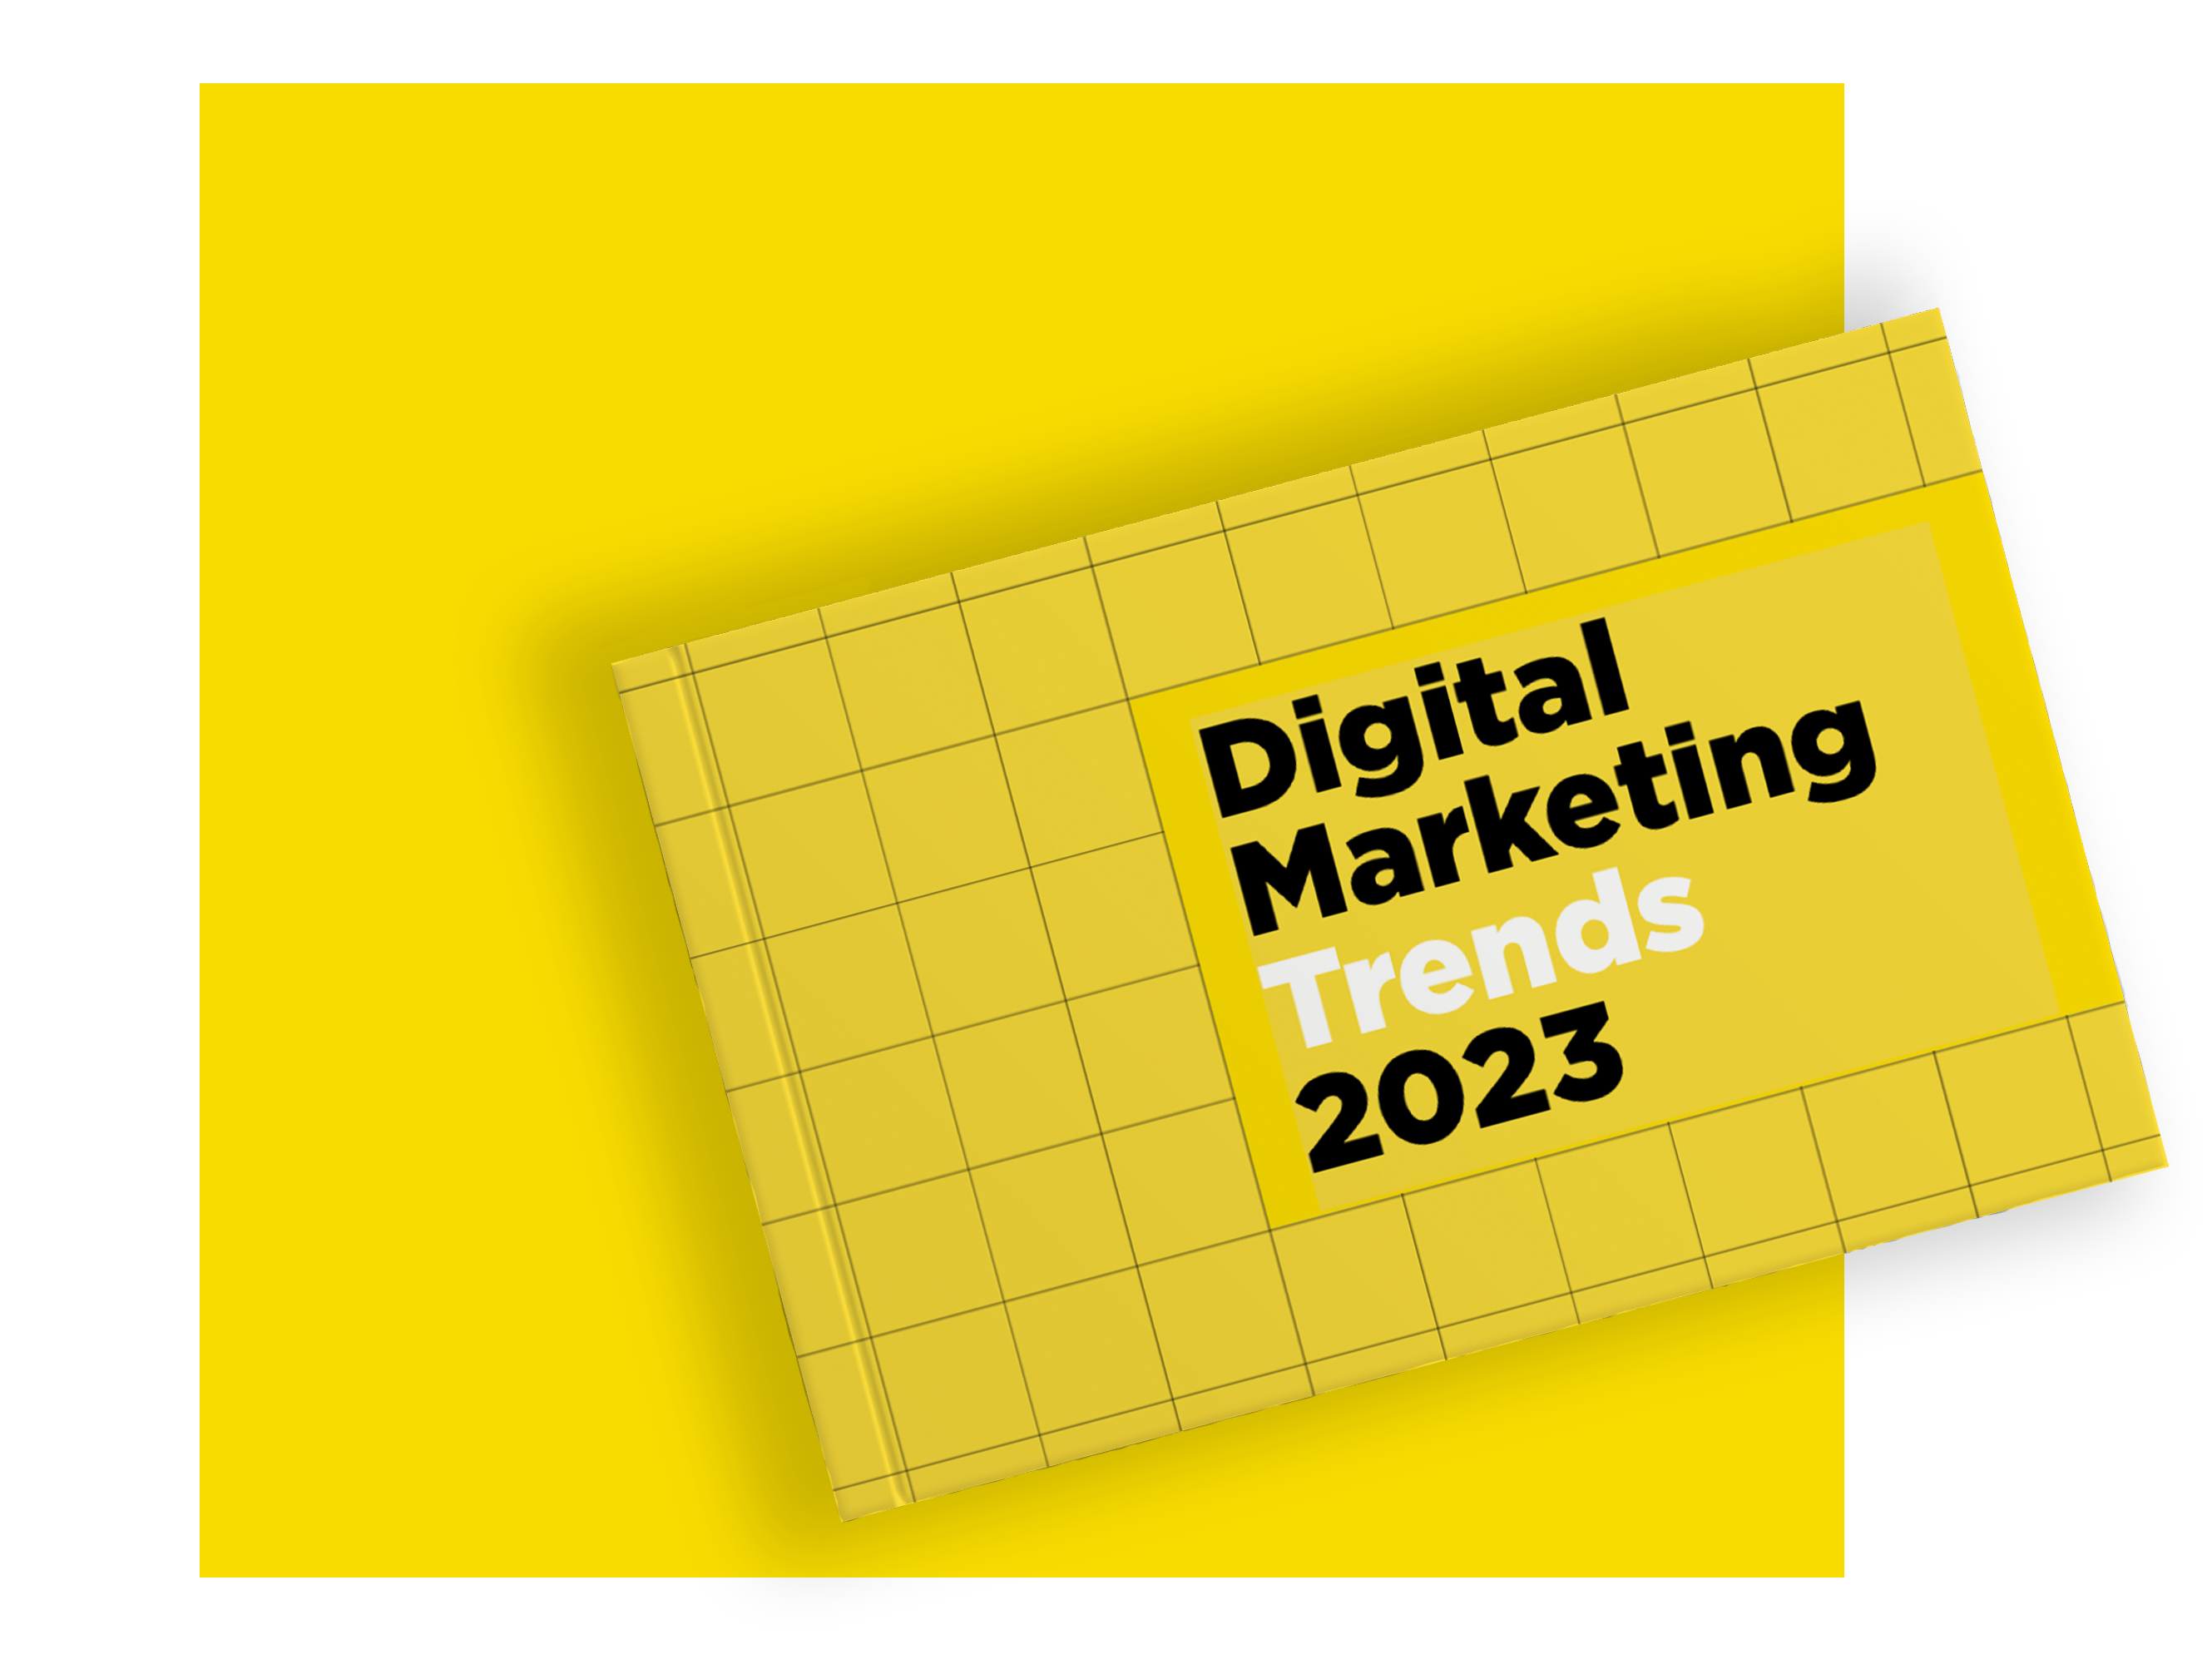 Digital marketing trends 2023